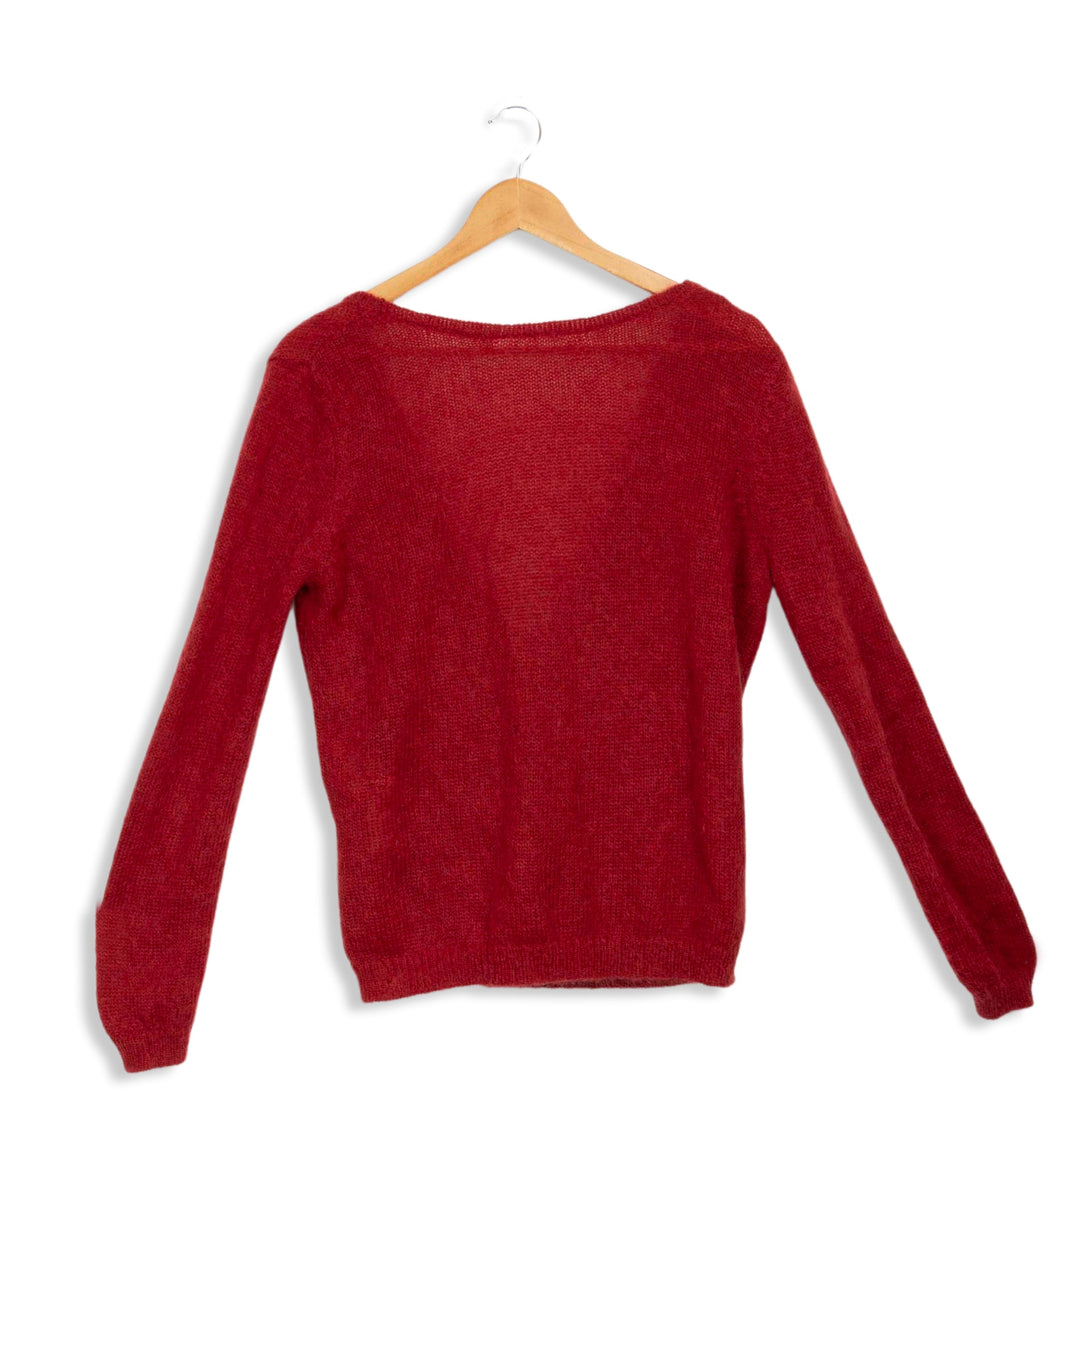 Sézane red wrapover sweater - M